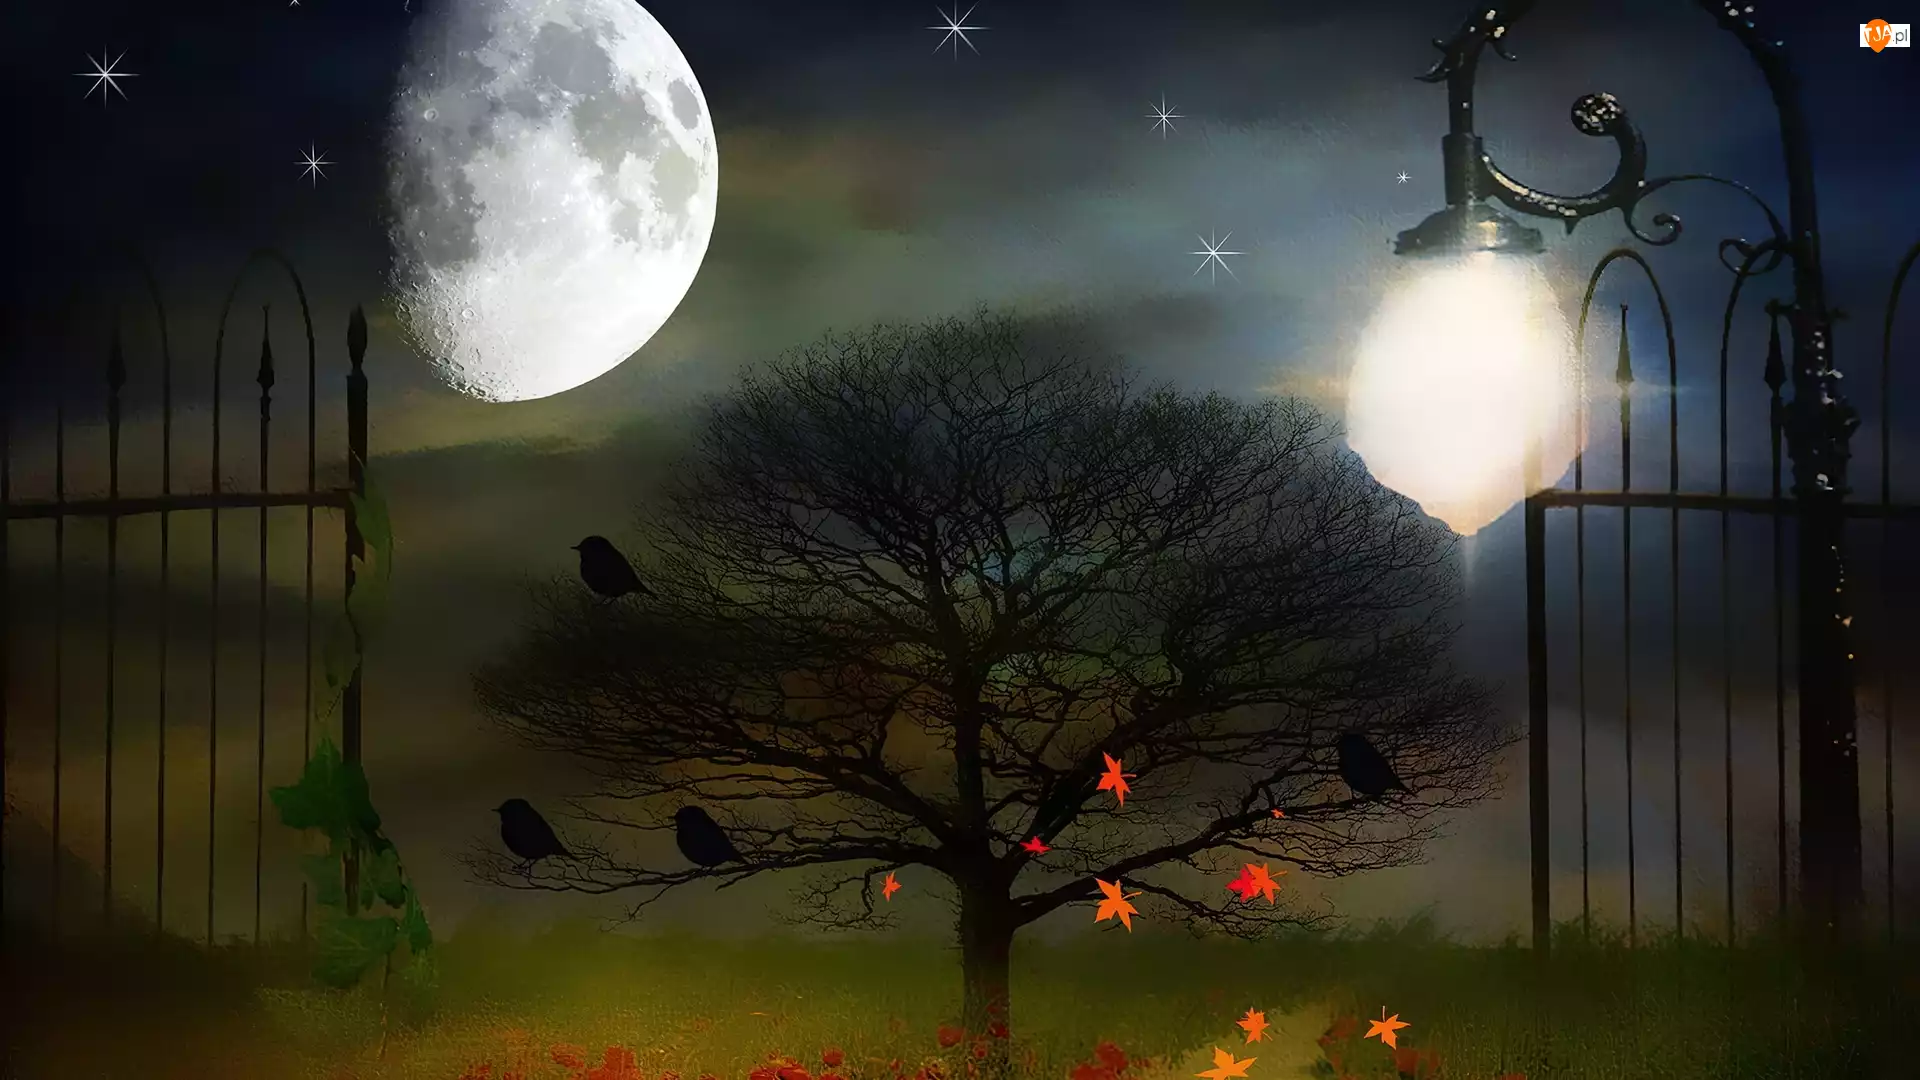 Księżyc, Obraz, Drzewo, Brama, Liście